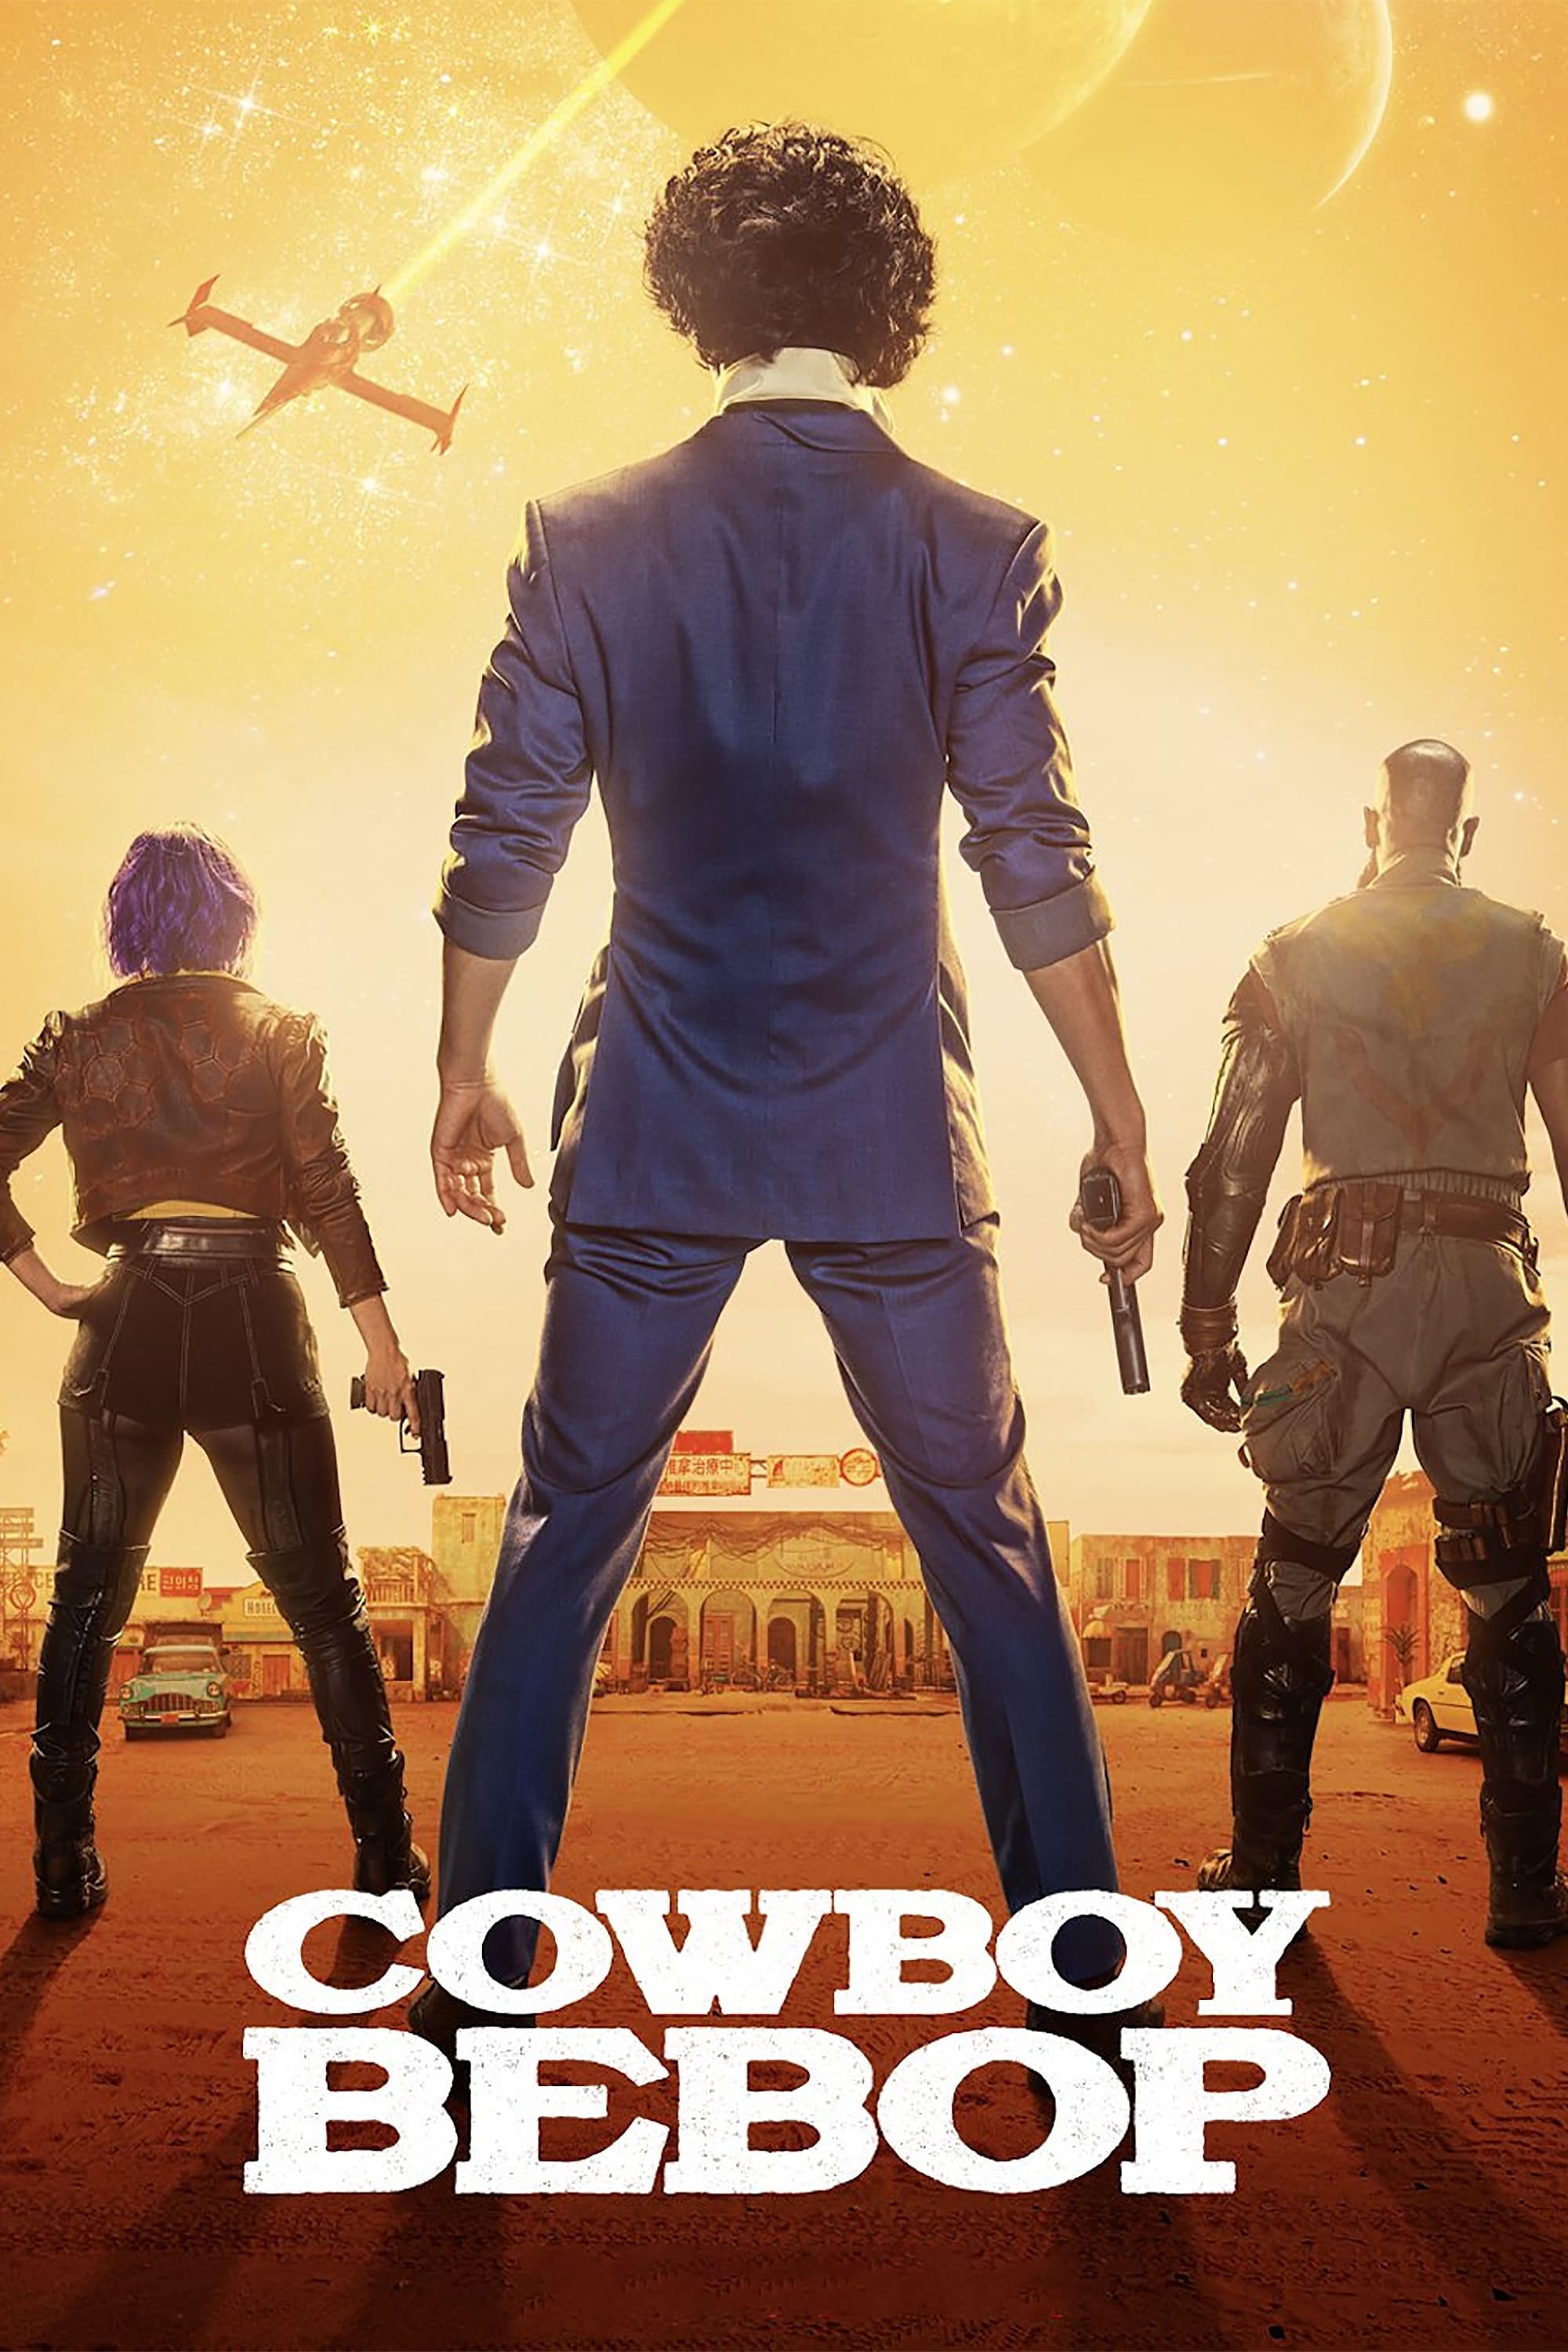 Caratula de Cowboy Bebop (Cowboy Bebop) 